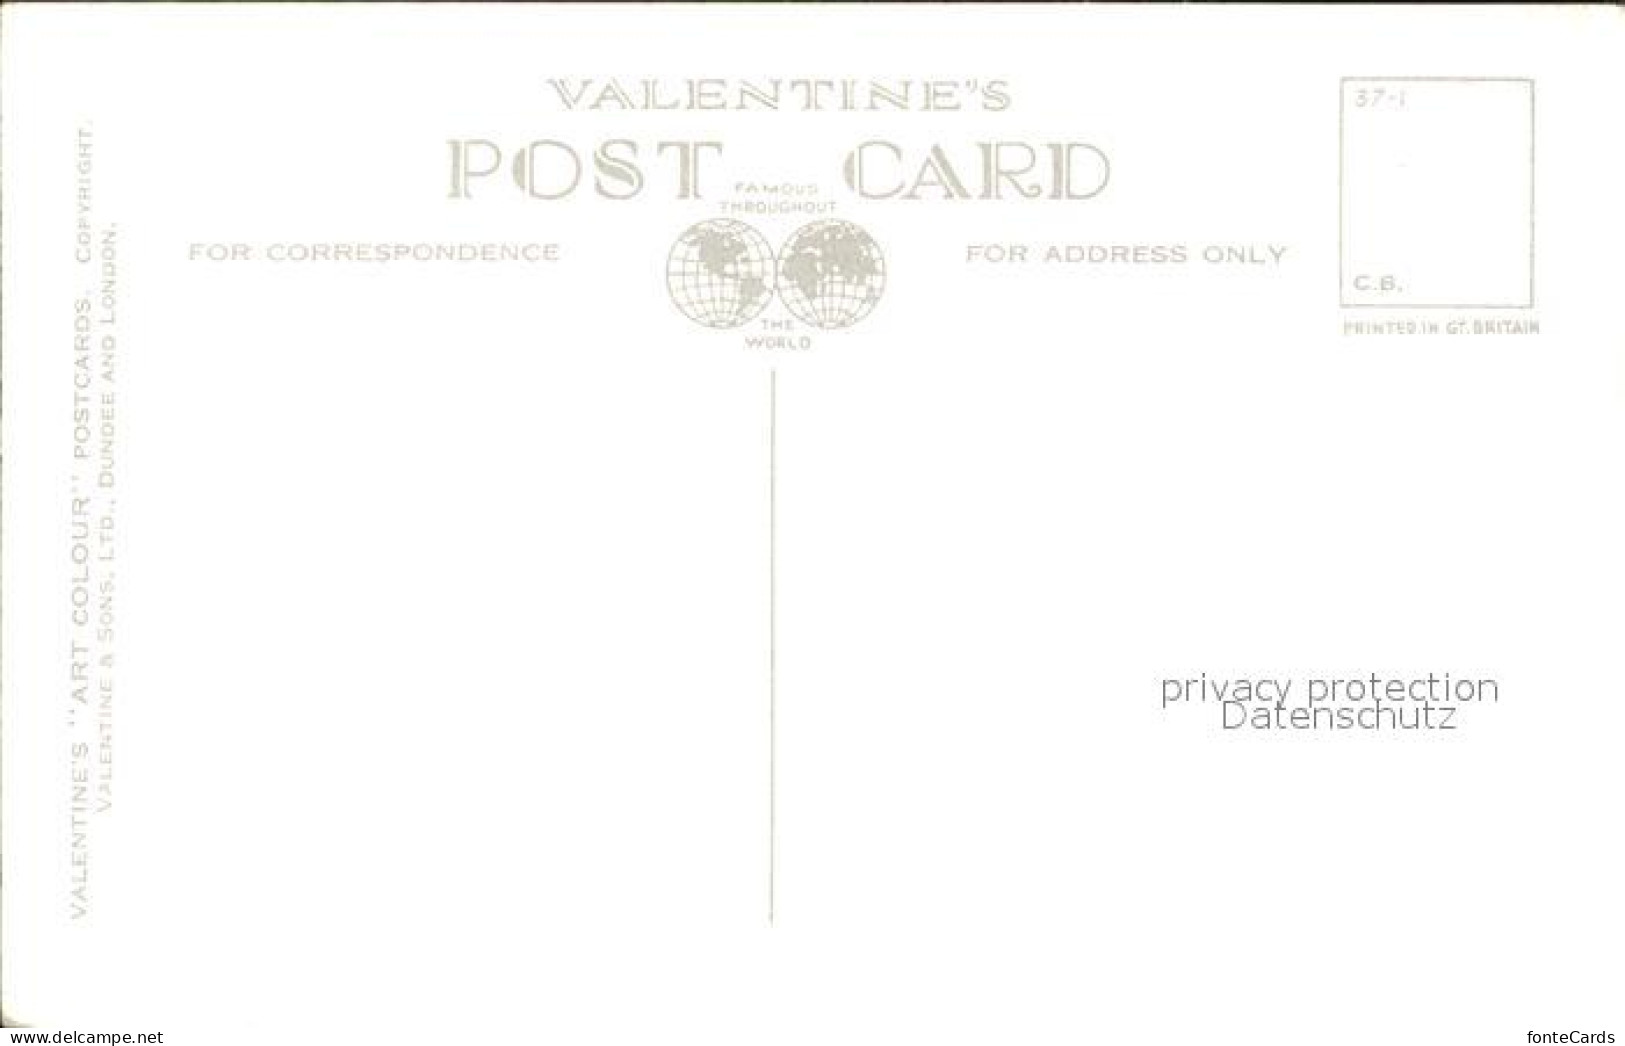 11920666 Stratford-on-Avon Anne Hathaways Cottage Intern Kuenstlerkarte Stratfor - Sonstige & Ohne Zuordnung